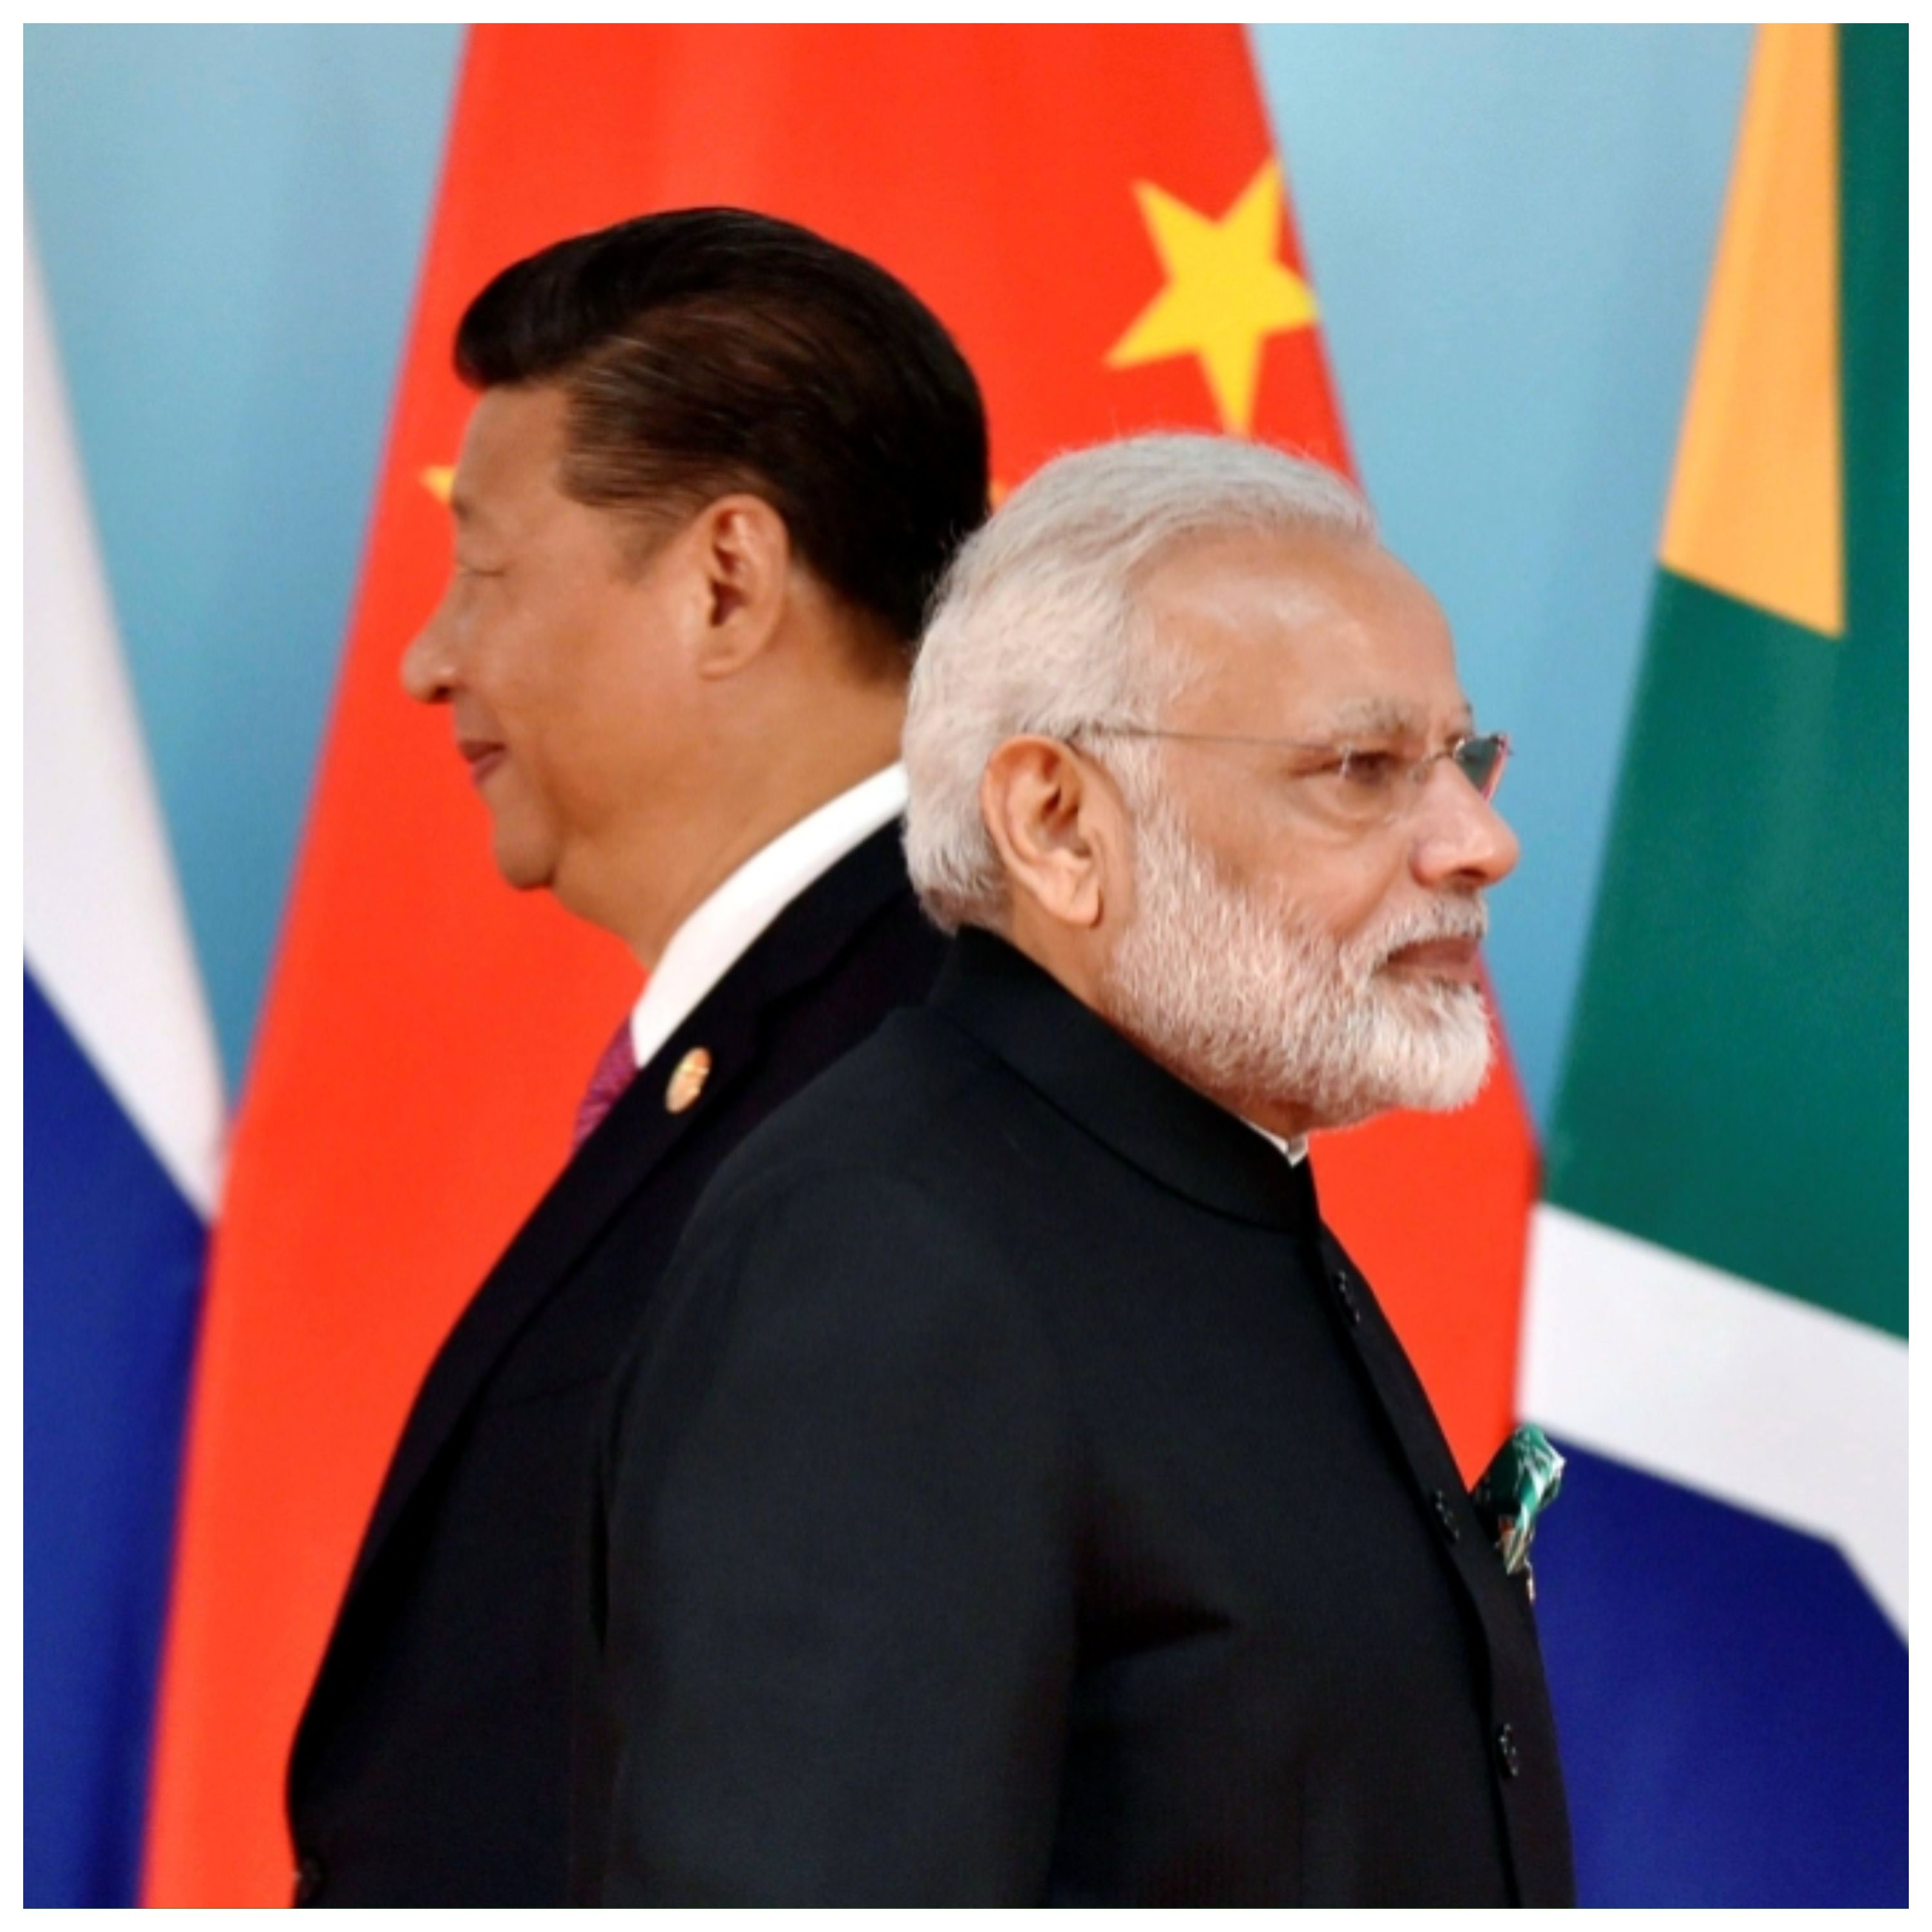 هند، چین را خلع سلاح کرد / آیا پایان افسانه اژدهای زرد فرا رسیده است؟